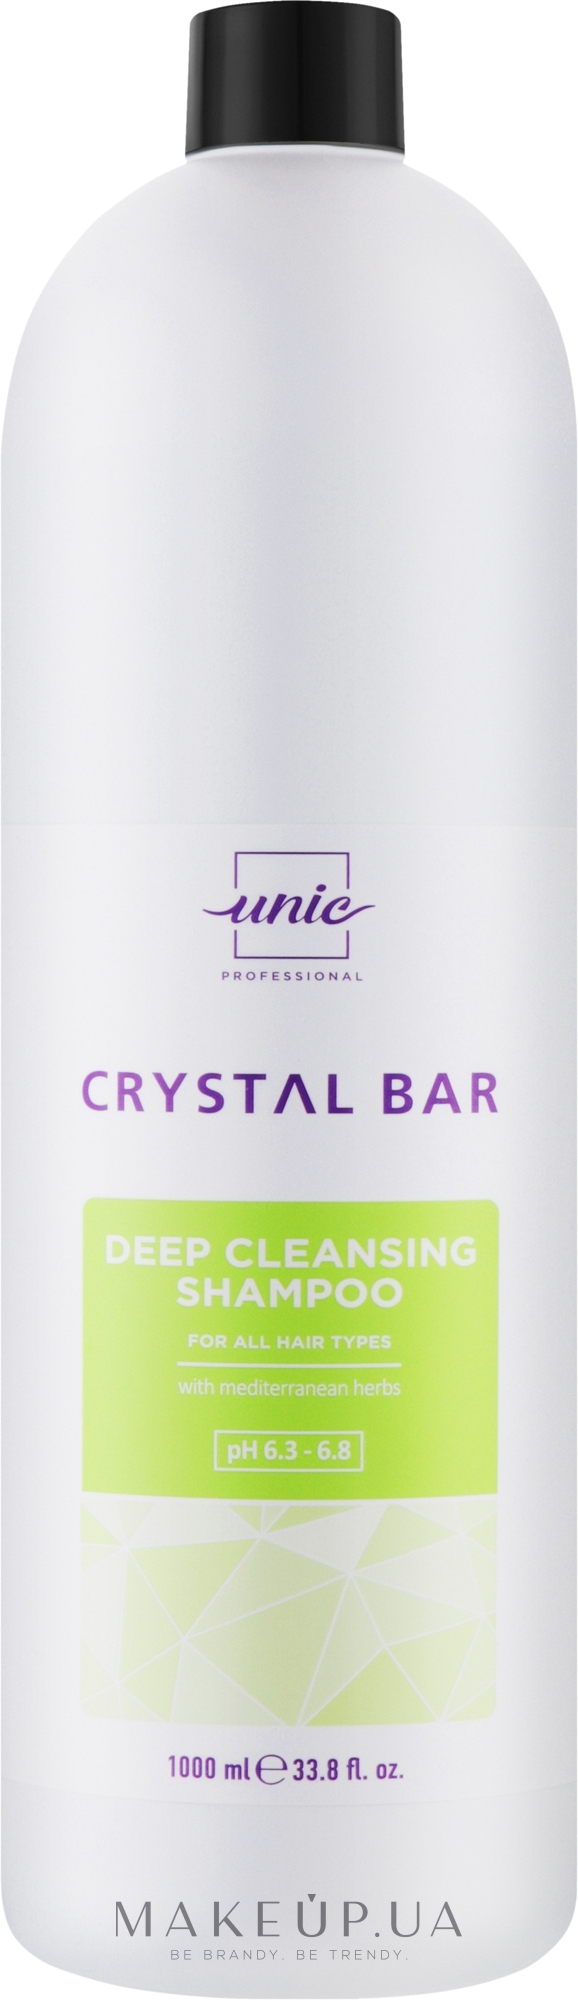 Шампунь для глубокого очищения - Unic Crystal Bar Deep Cleansing Shampoo — фото 1000ml